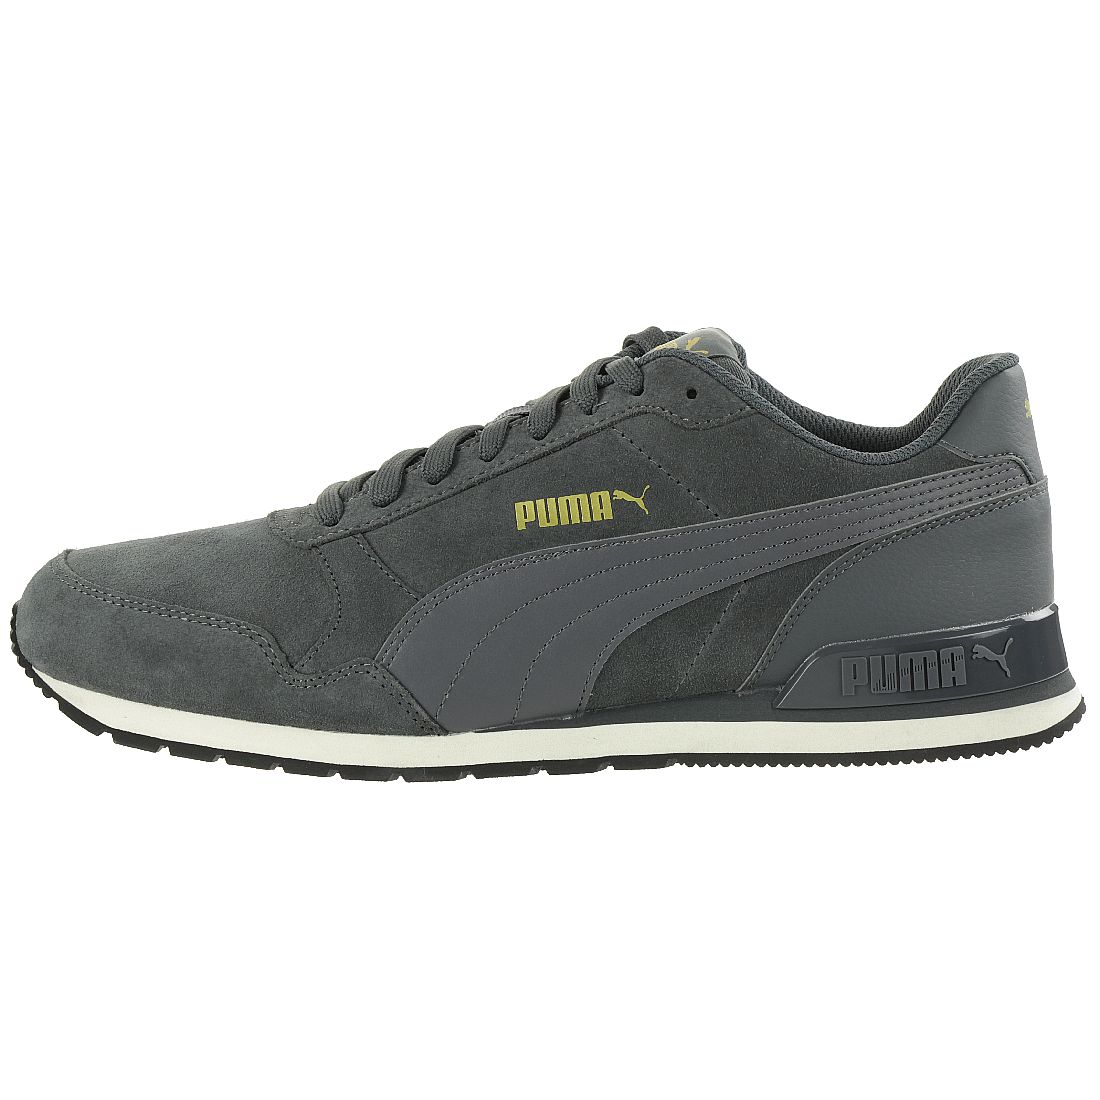 Puma ST Runner v2 SD Sneaker Schuhe 365279 05 Herren Schuhe grau